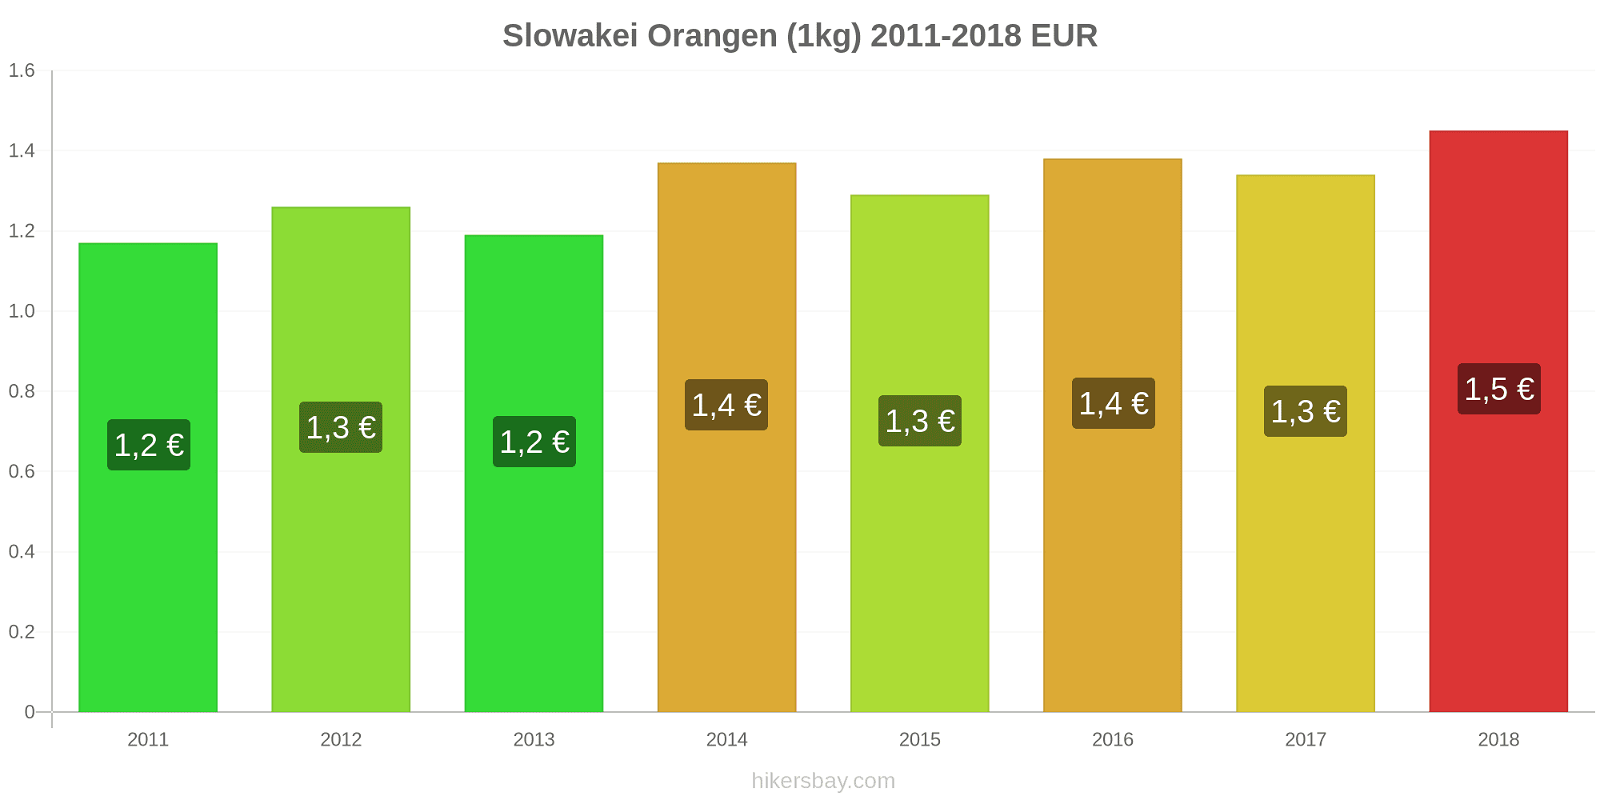 Slowakei Preisänderungen Orangen (1kg) hikersbay.com